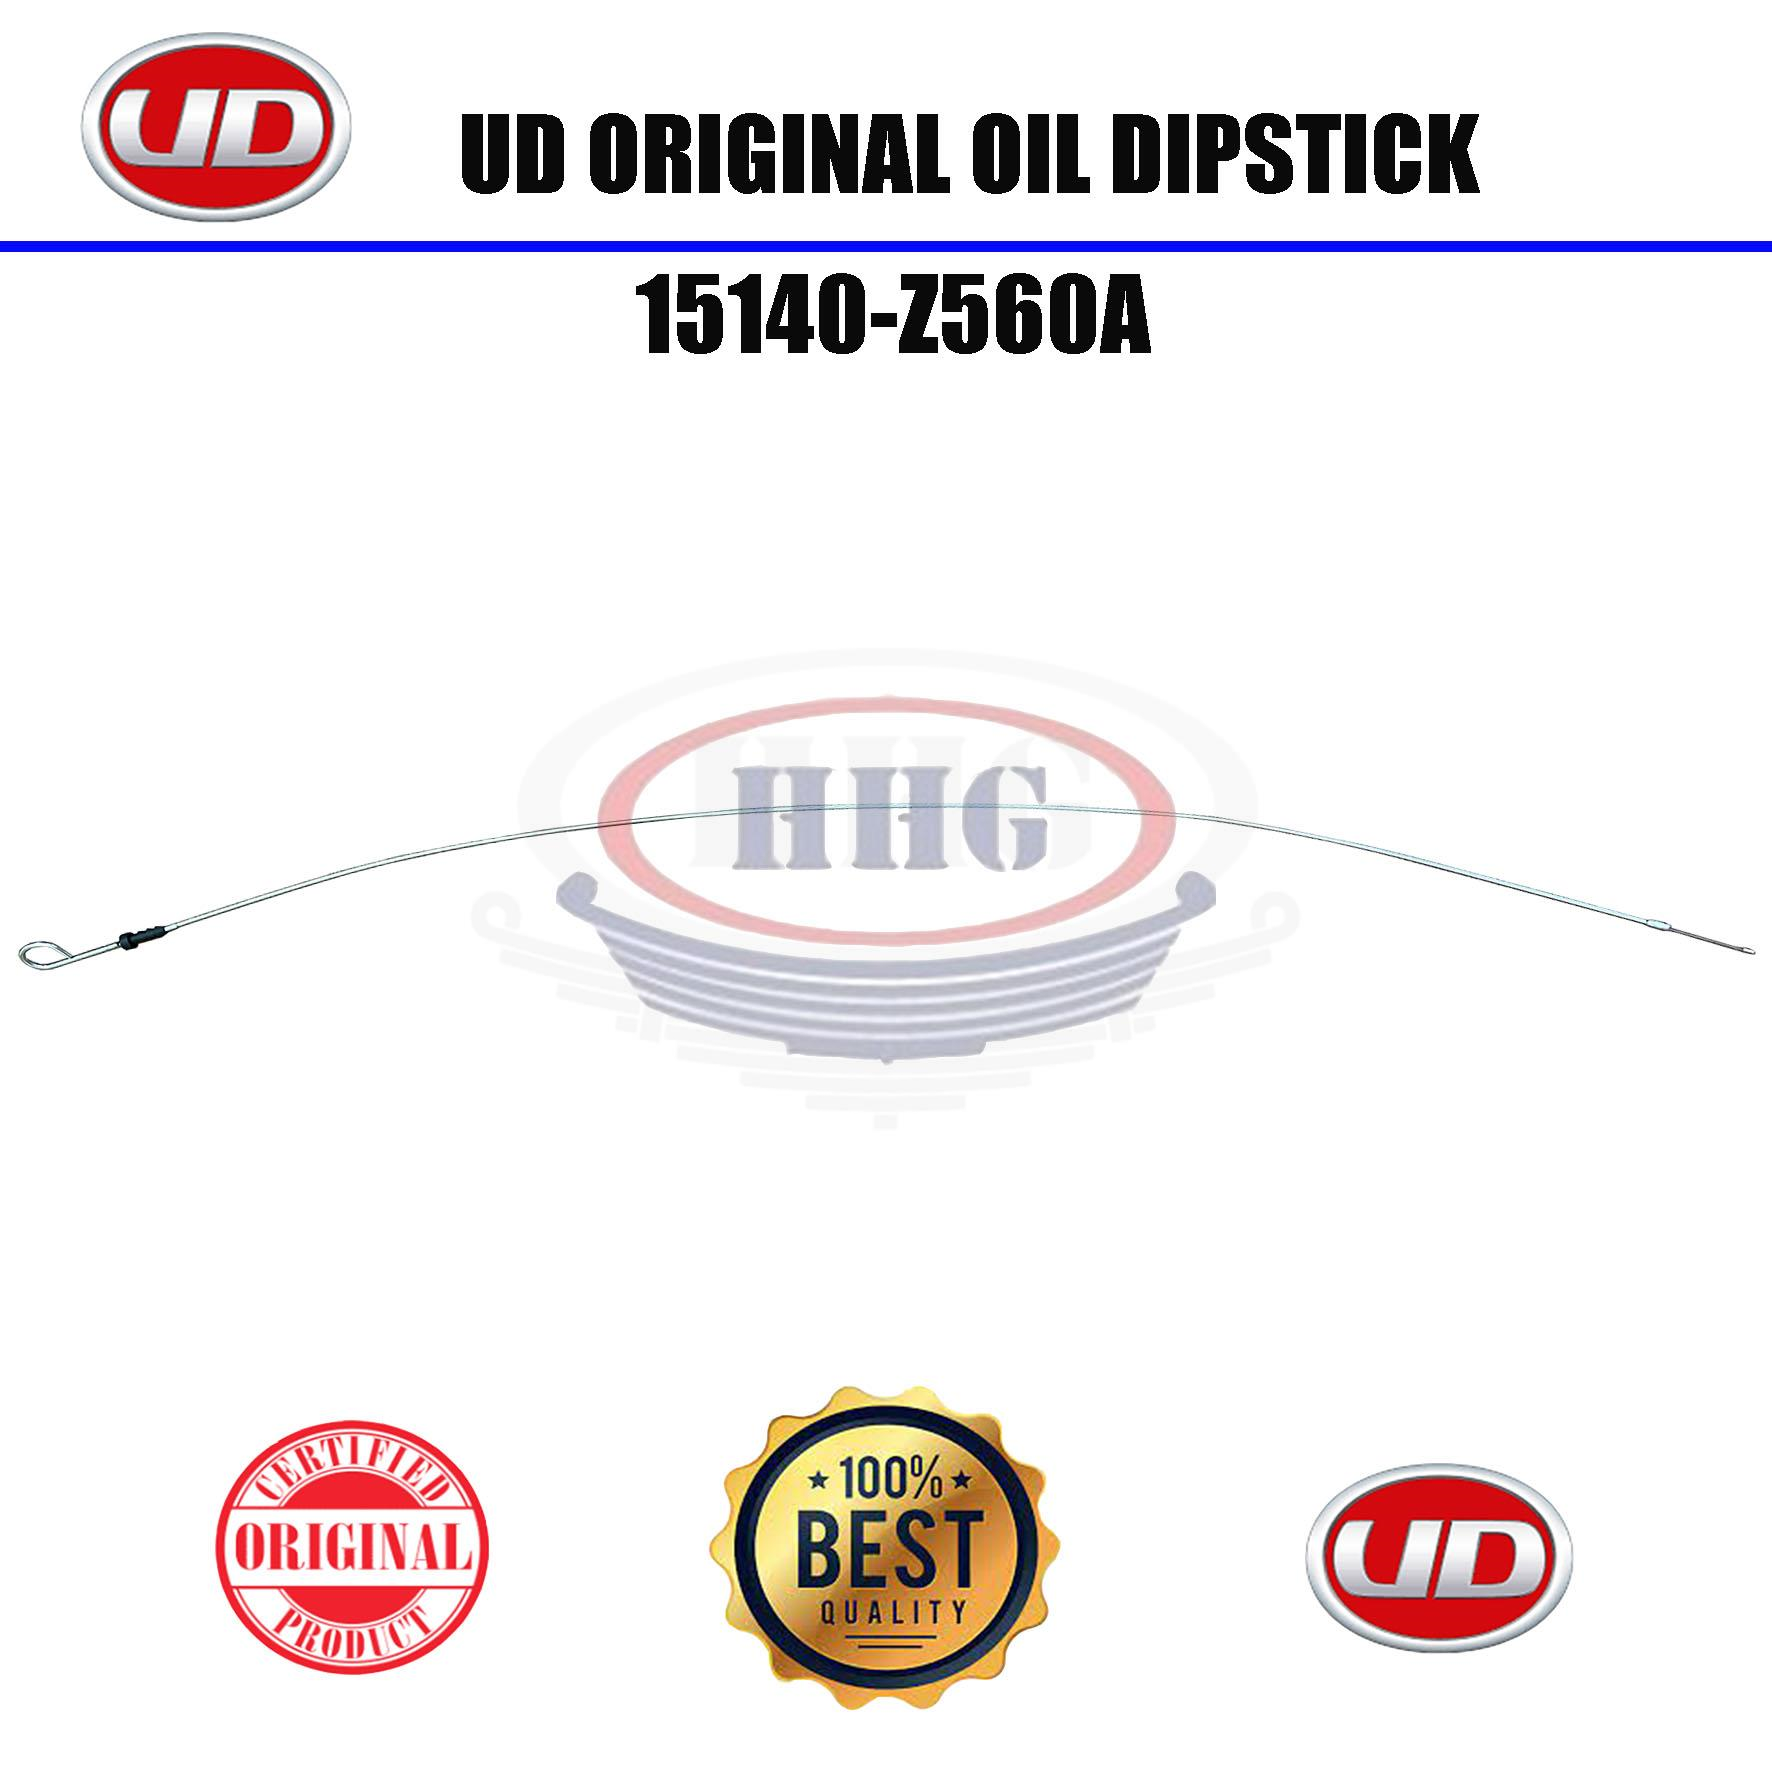 UD Original MK25 Oil Dipstick (15140-Z560A)